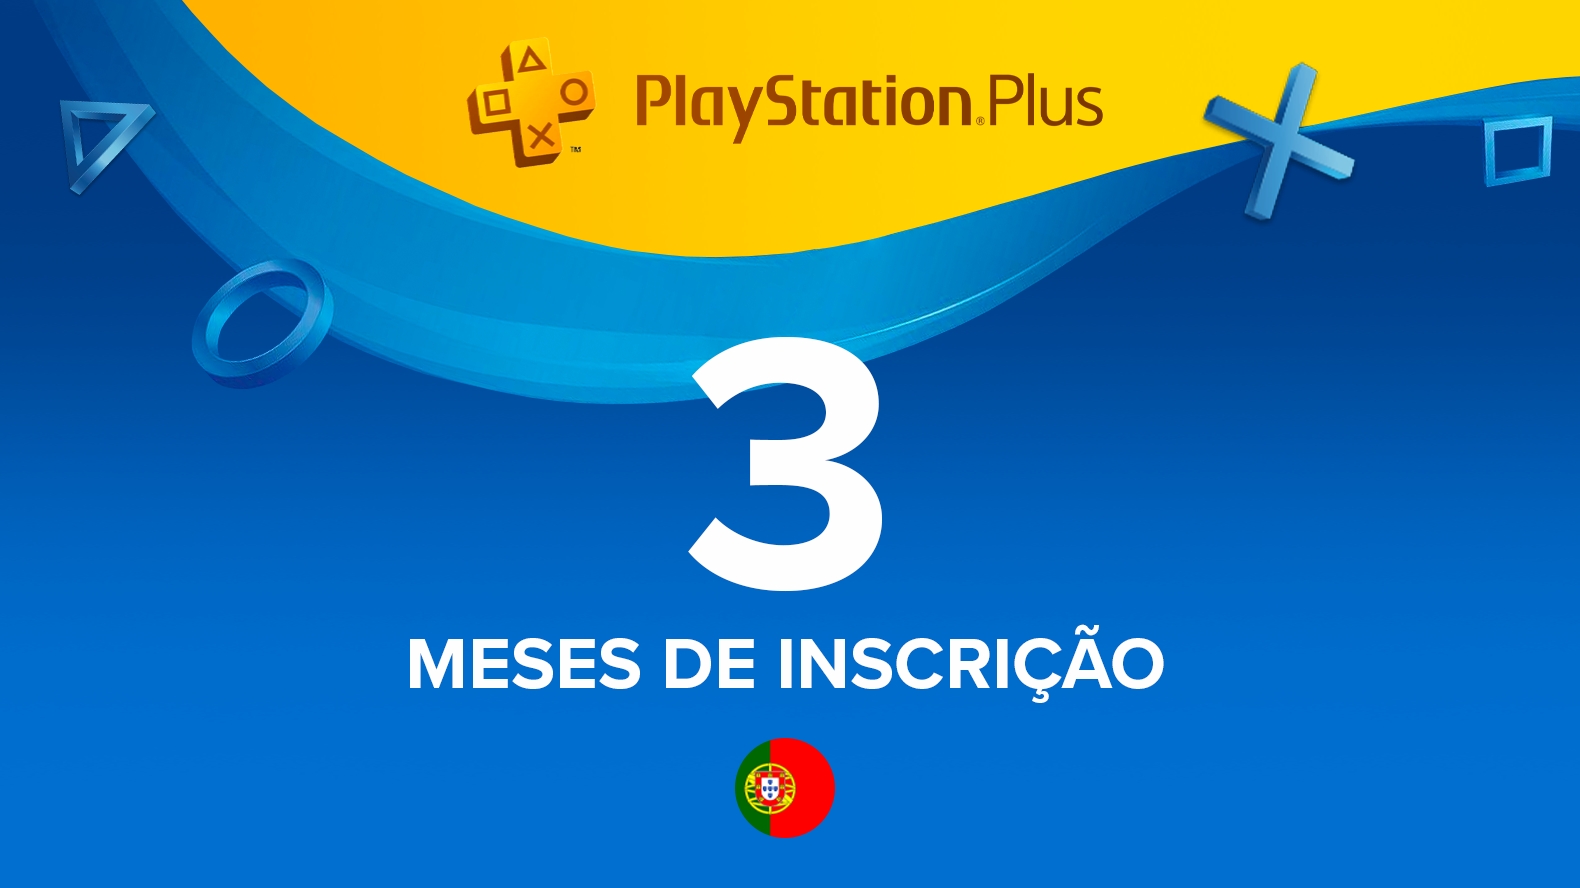 Comprar PlayStation Plus - Suscripción 365 días Playstation Store